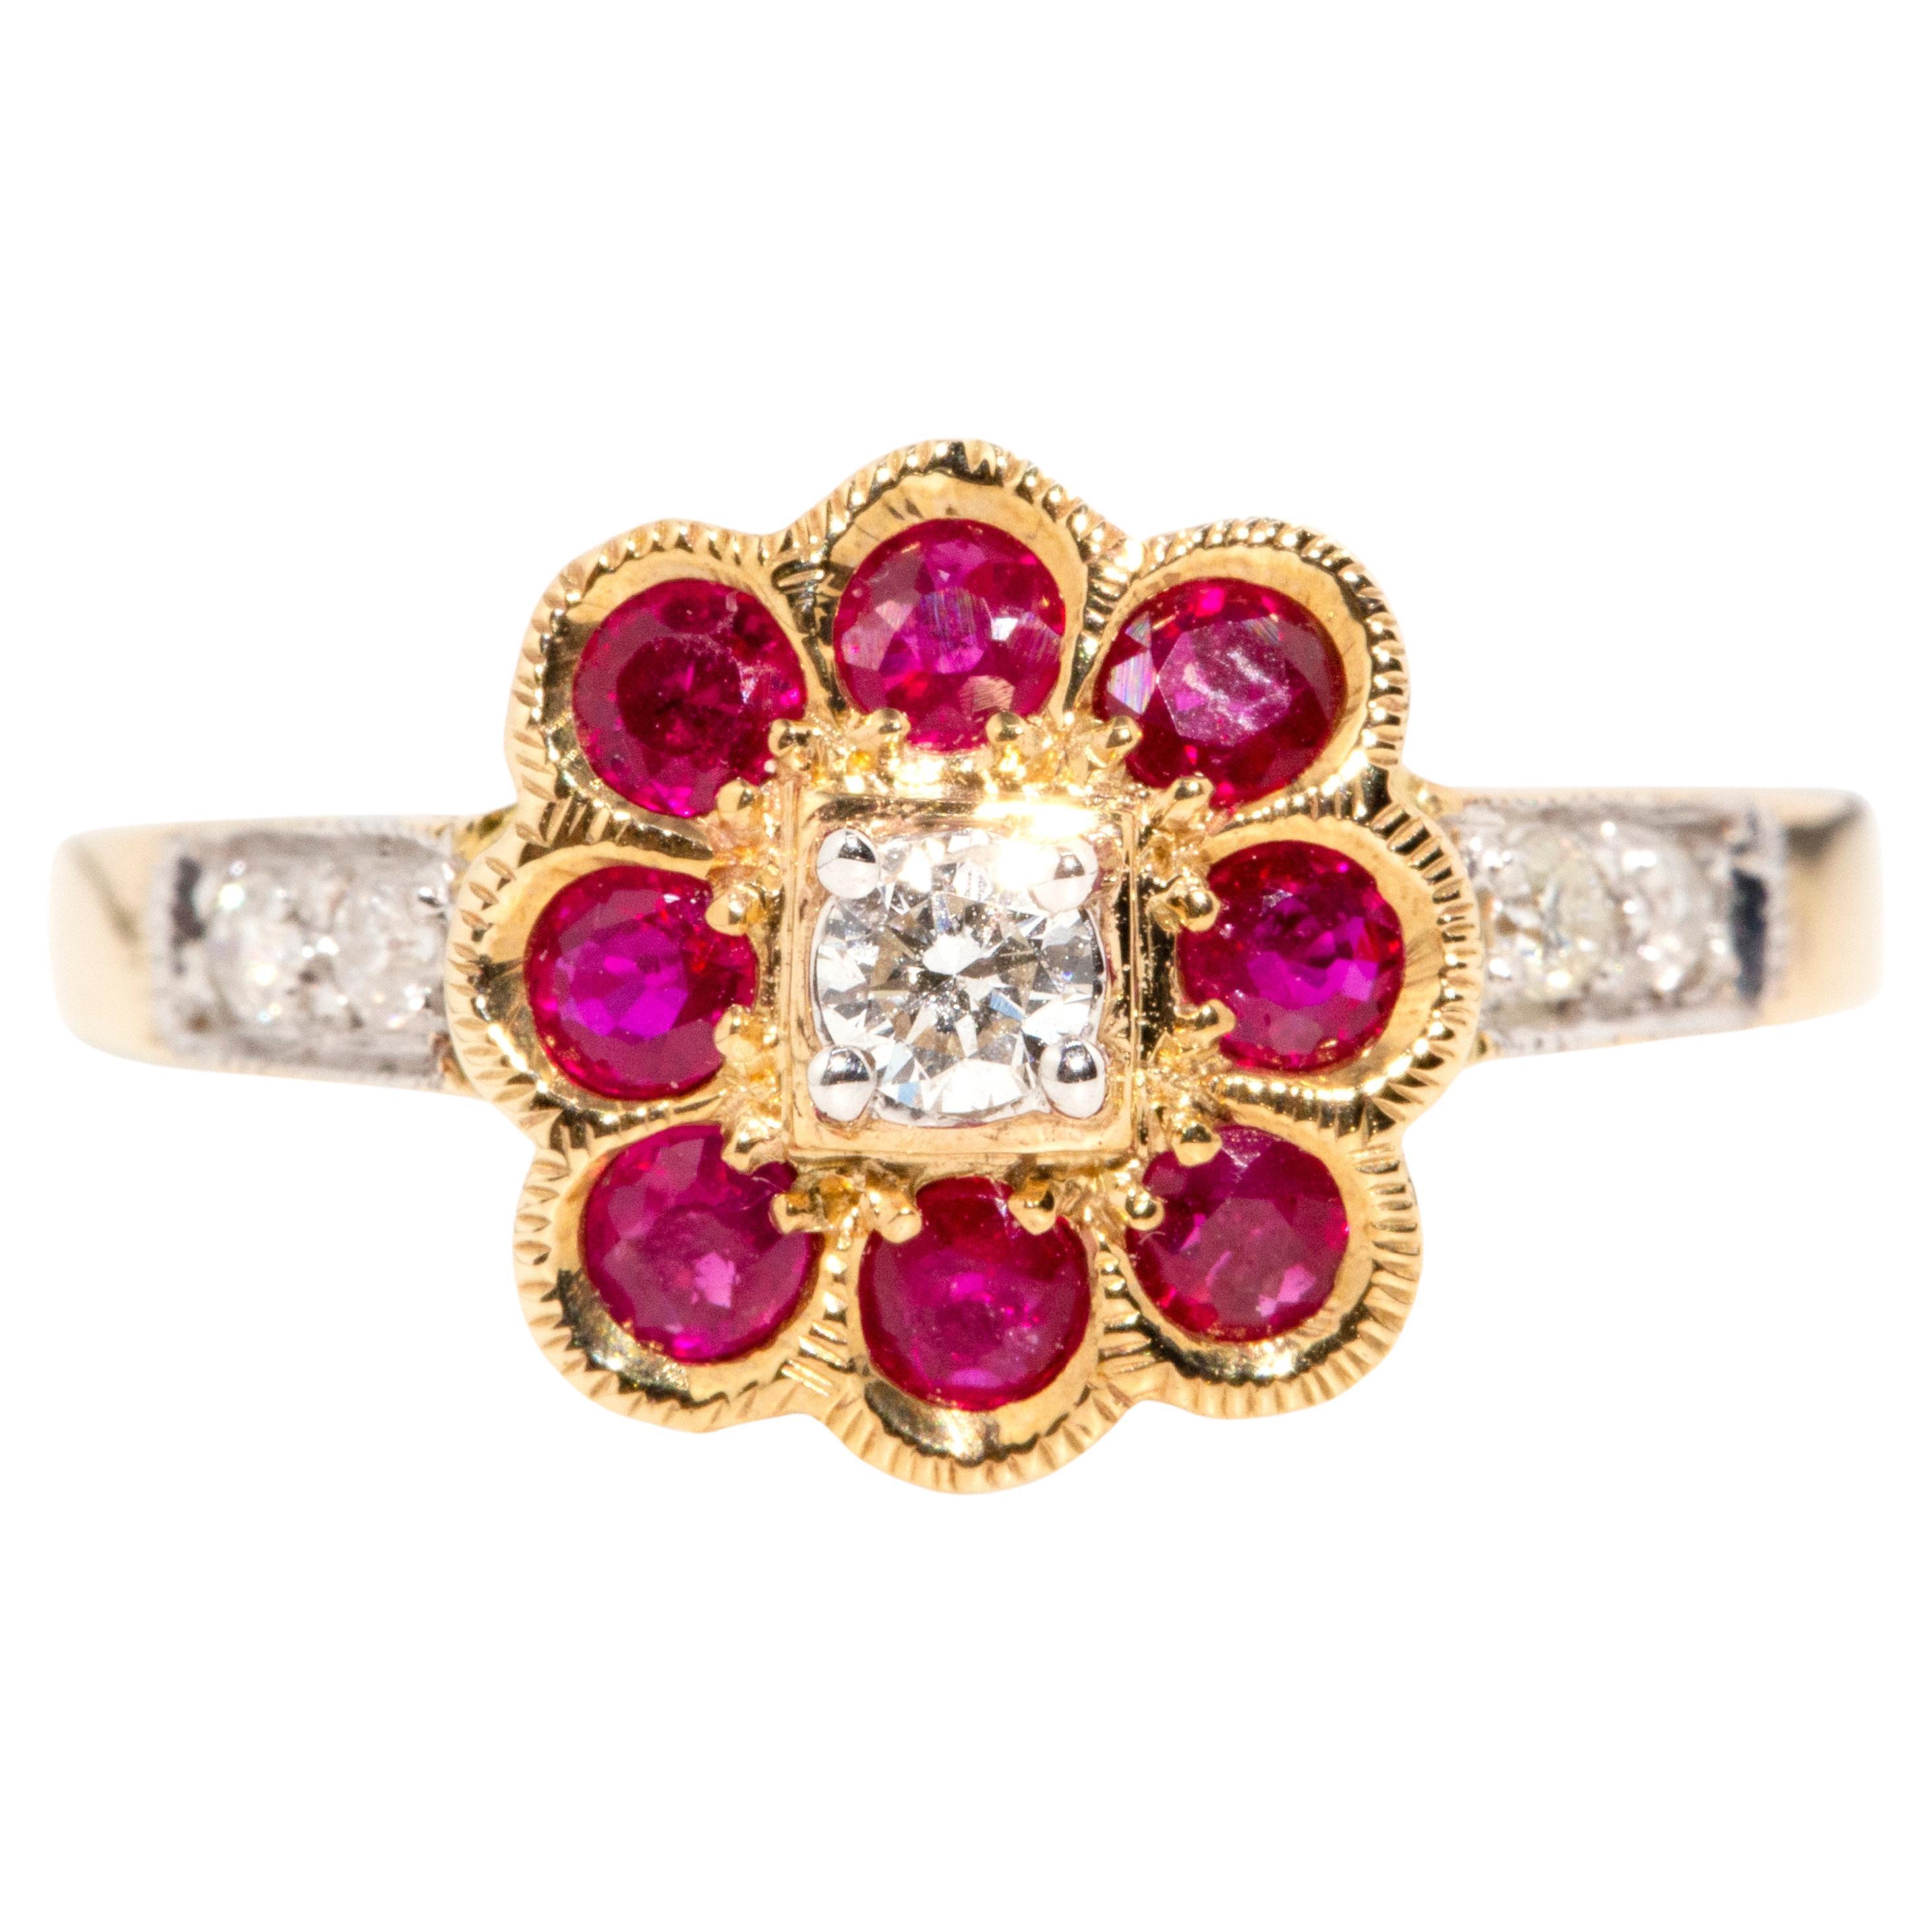 Vintage inspirierter leuchtend tiefroter Rubin & Diamant-Cluster-Ring 9 Karat Gelbgold